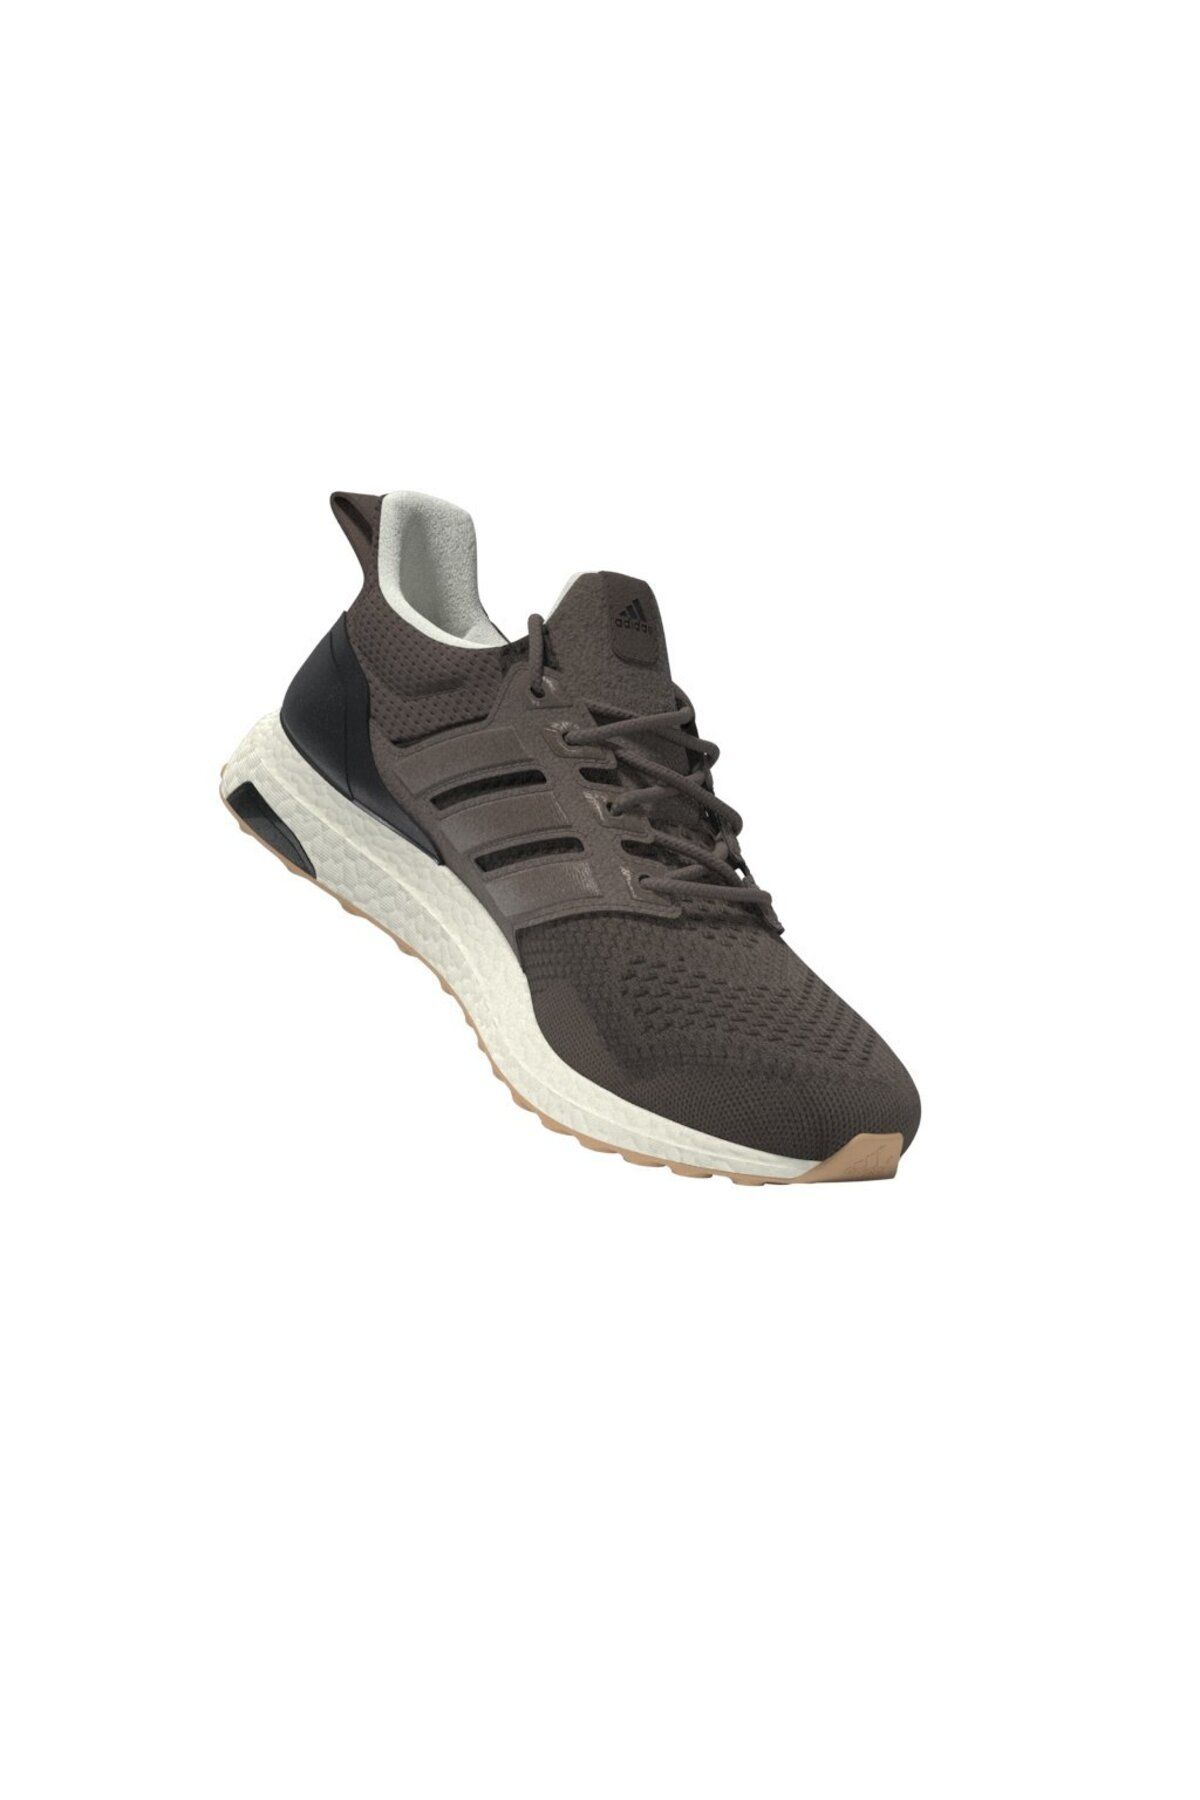 adidas Ultraboost 1.0 Erkek Koşu Ayakkabısı